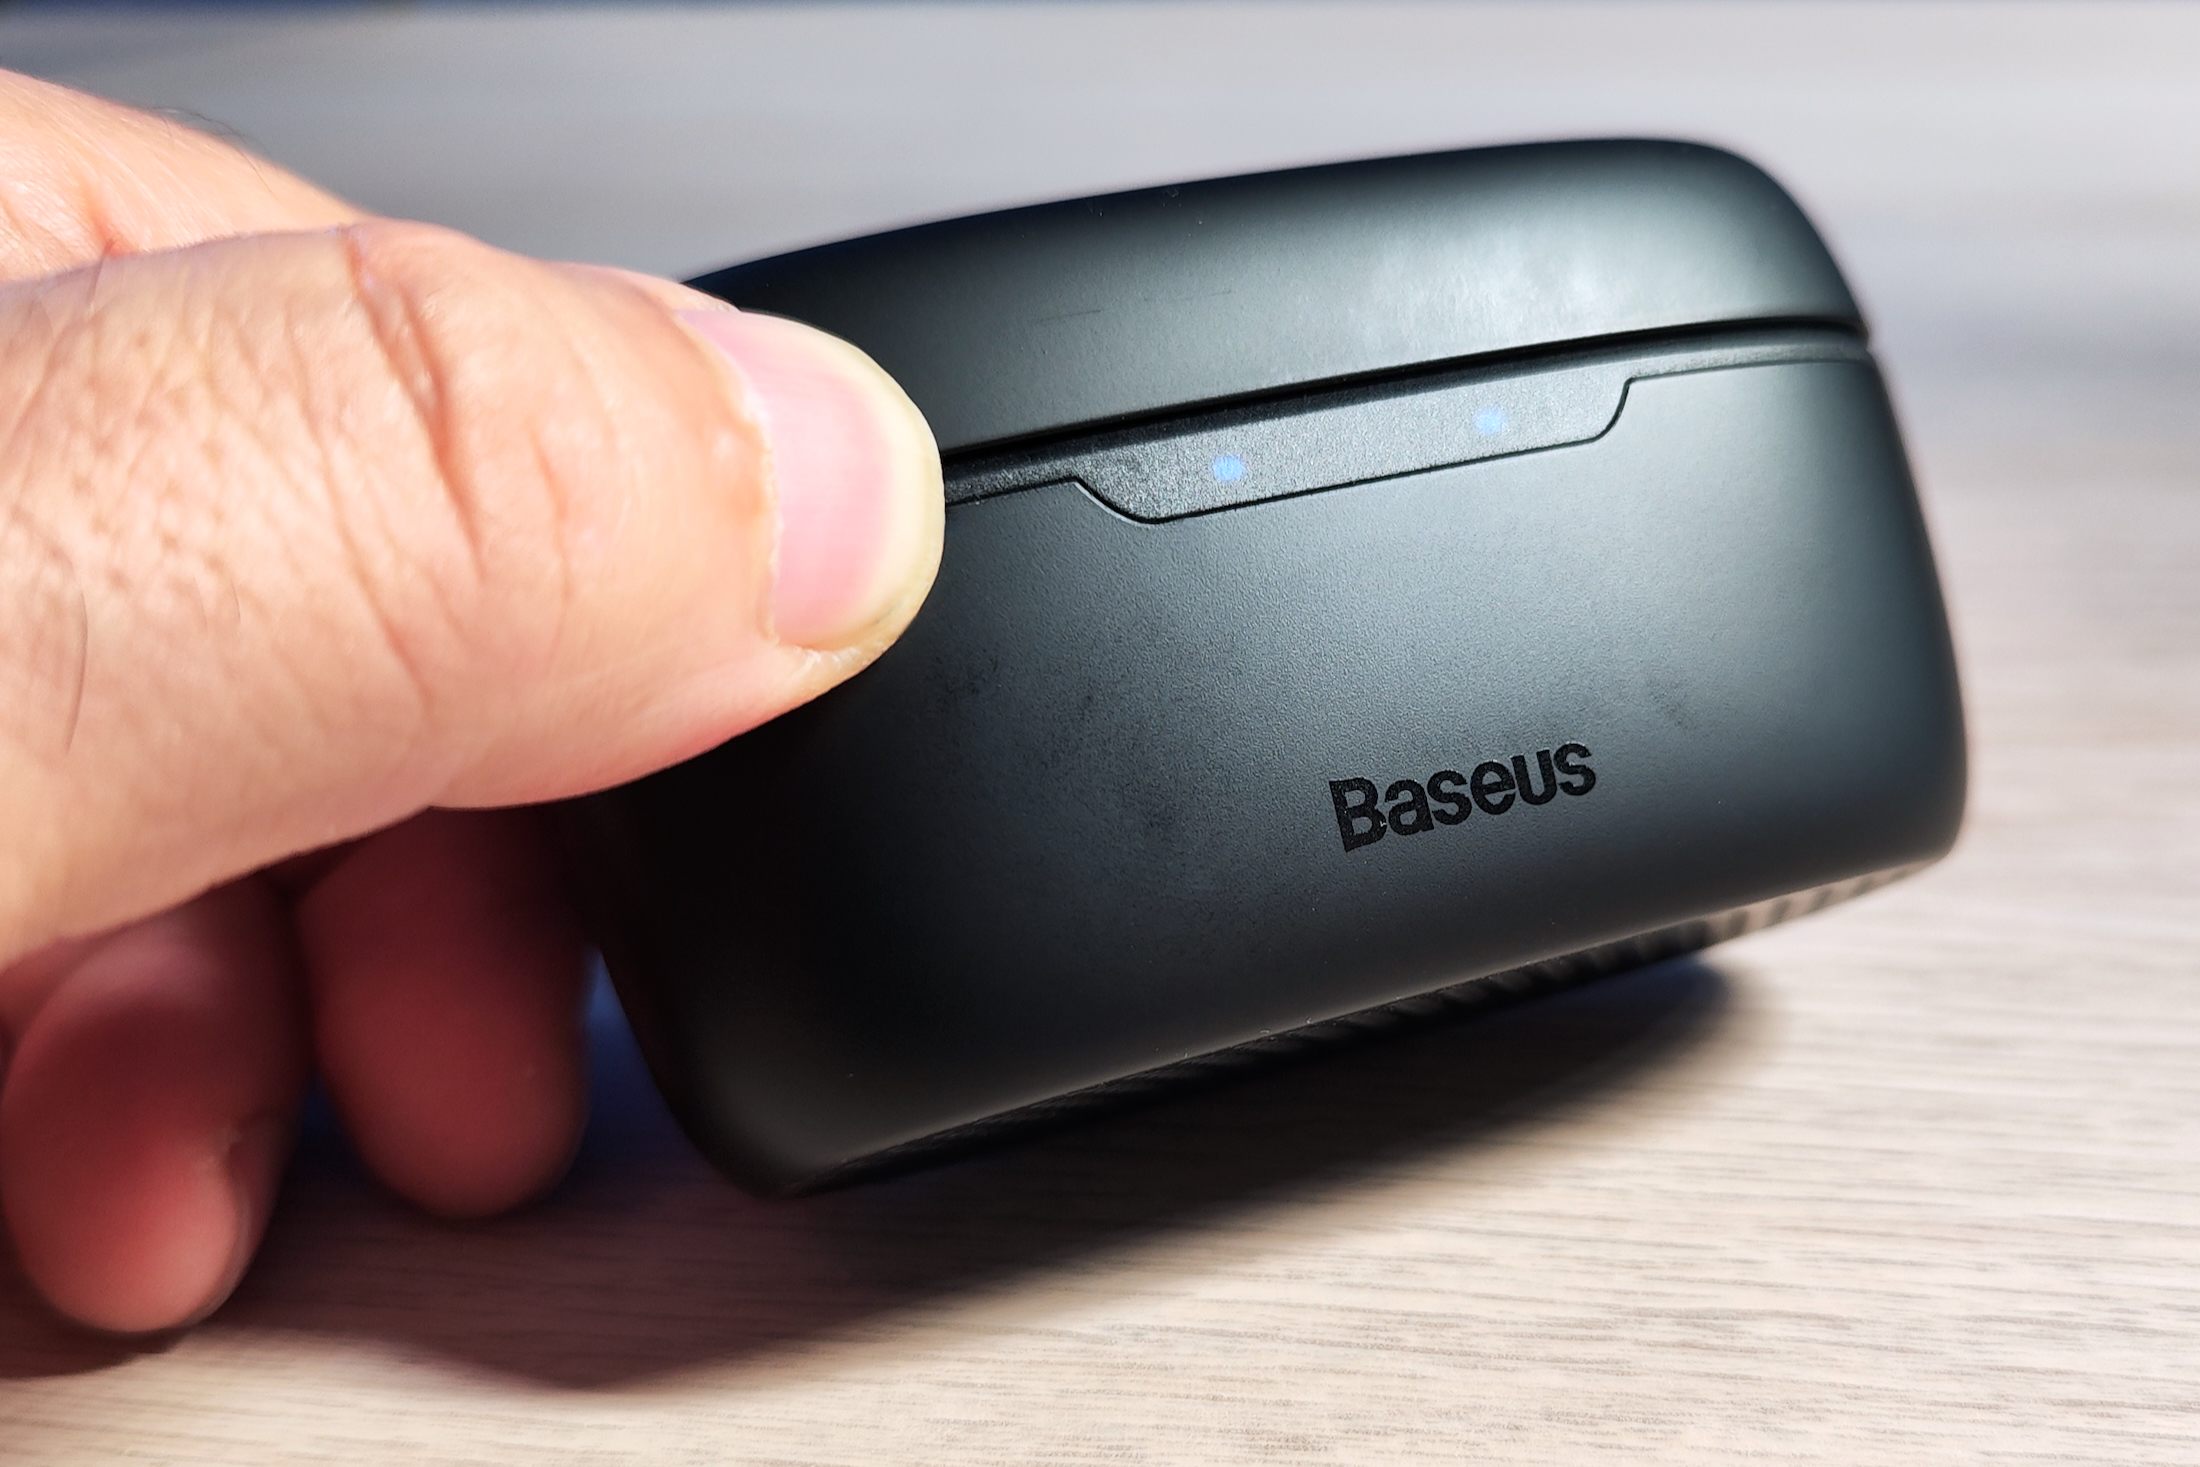 Baseus BOWIE MA10 HYBRID ANC True Wireless Earphones Earbuds & Charging  Case